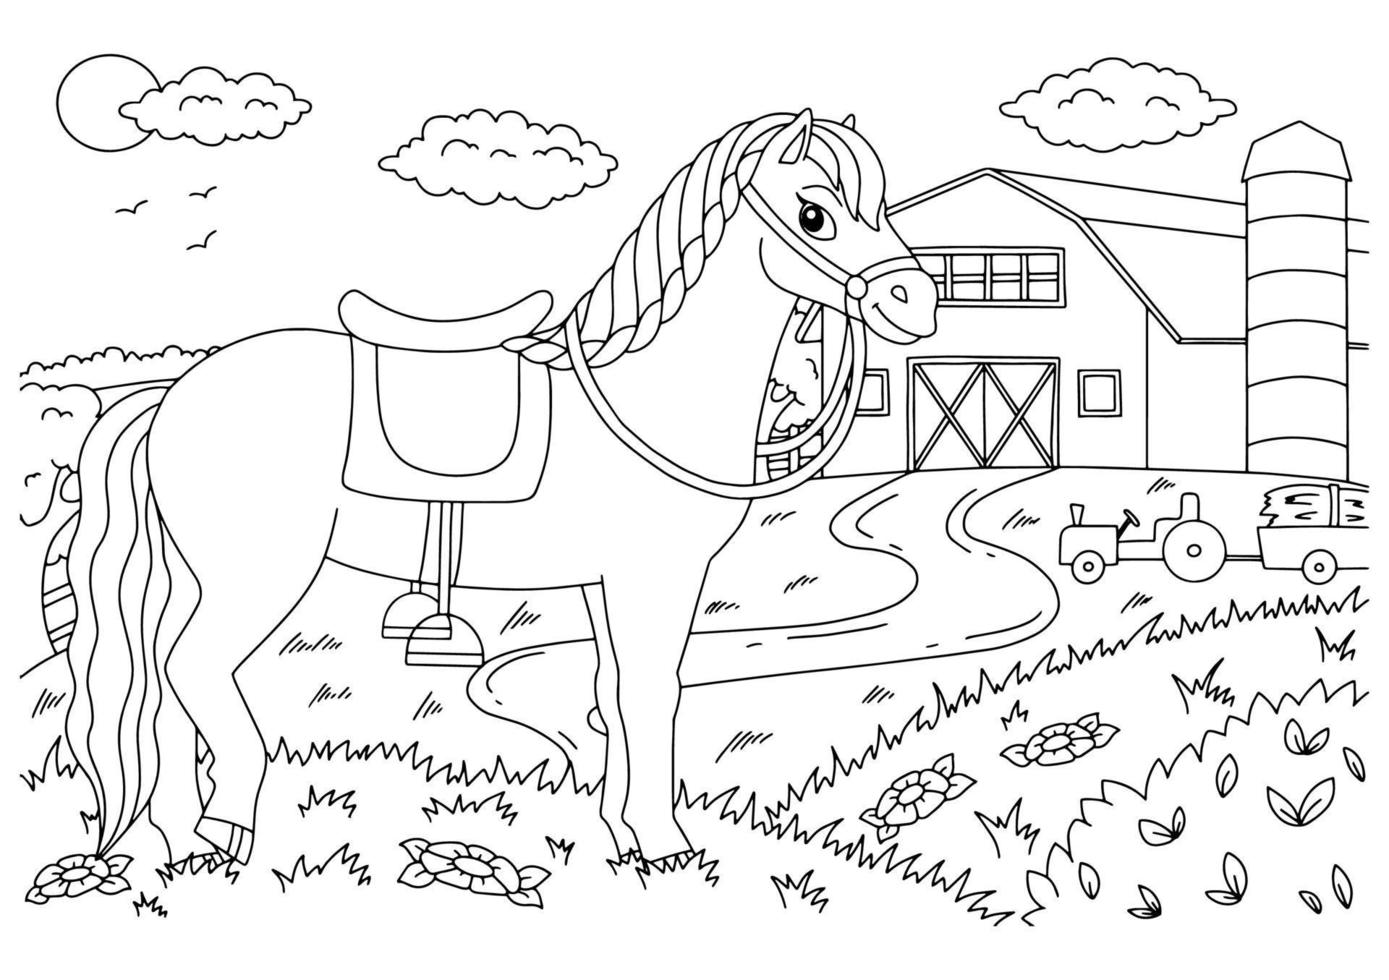 Desenhos de Cavalo Fofo para Colorir e Imprimir 